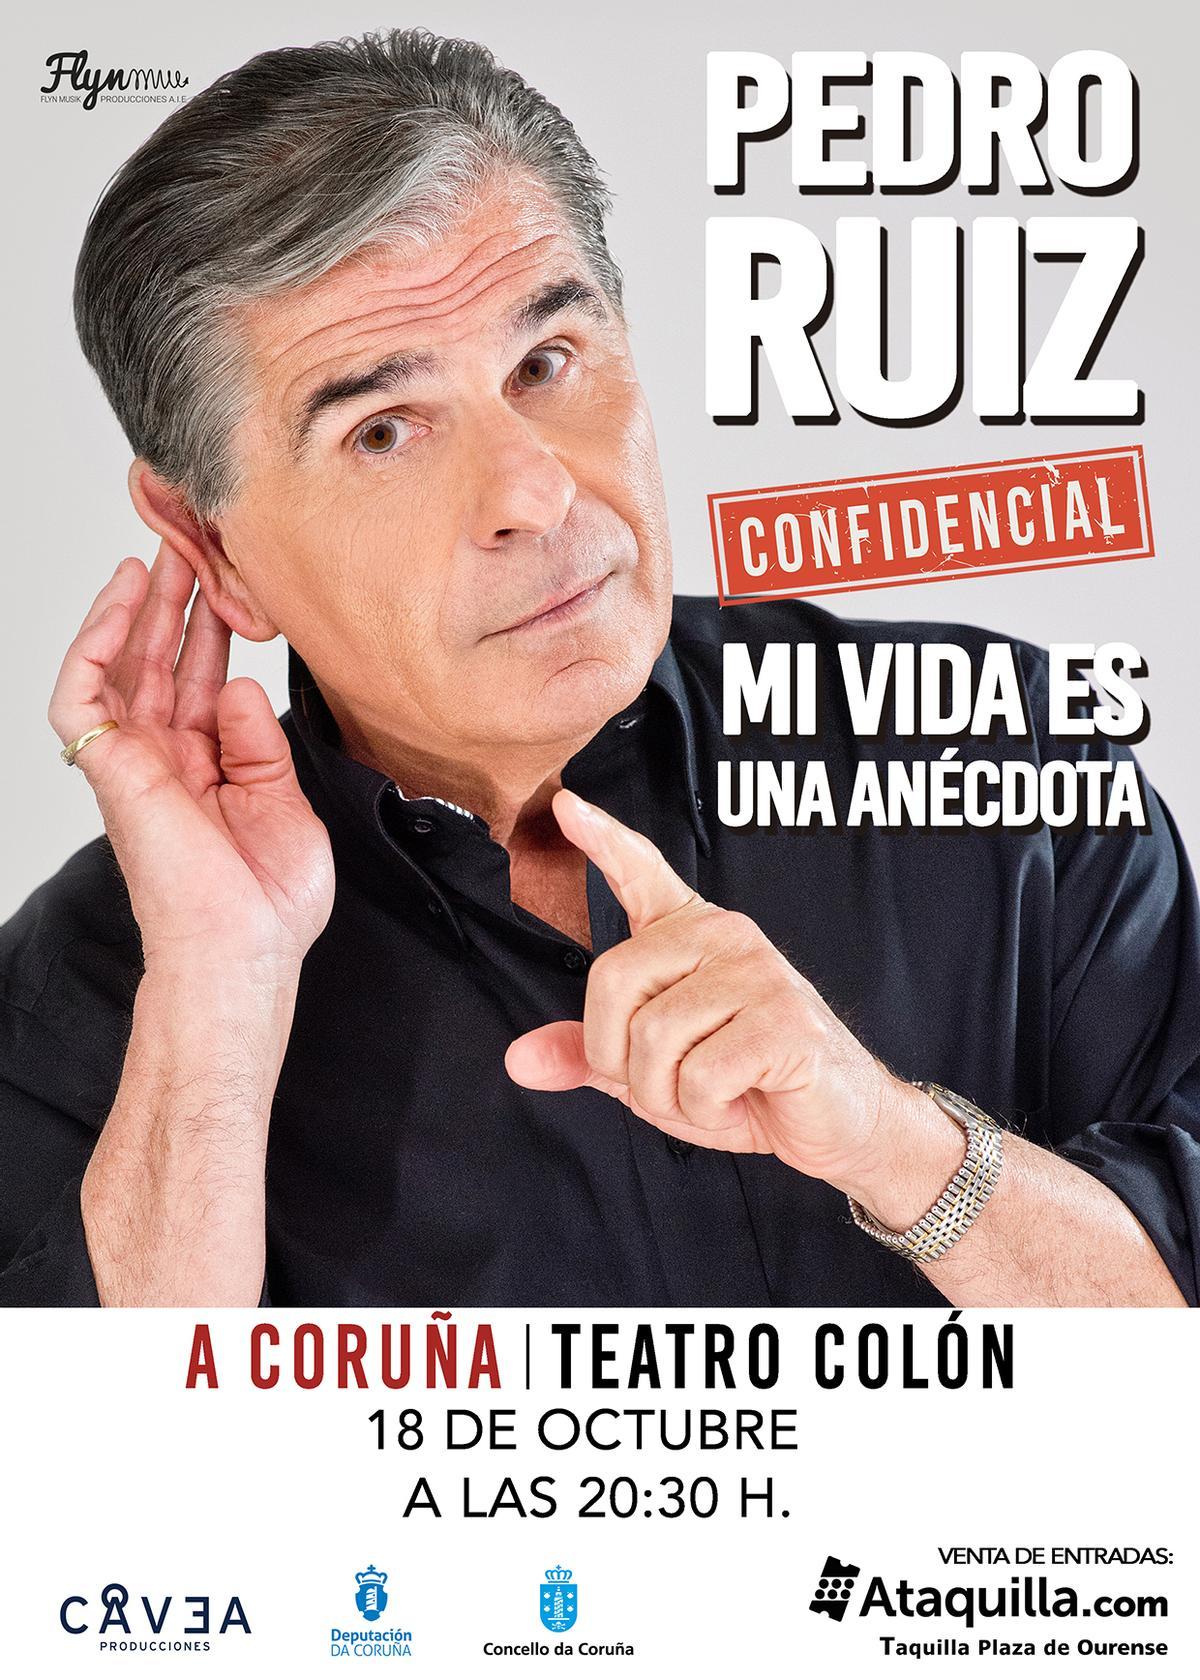 Pedro Ruiz presentará en A Coruña 'Mi vida es una anécdota by confidencial'.